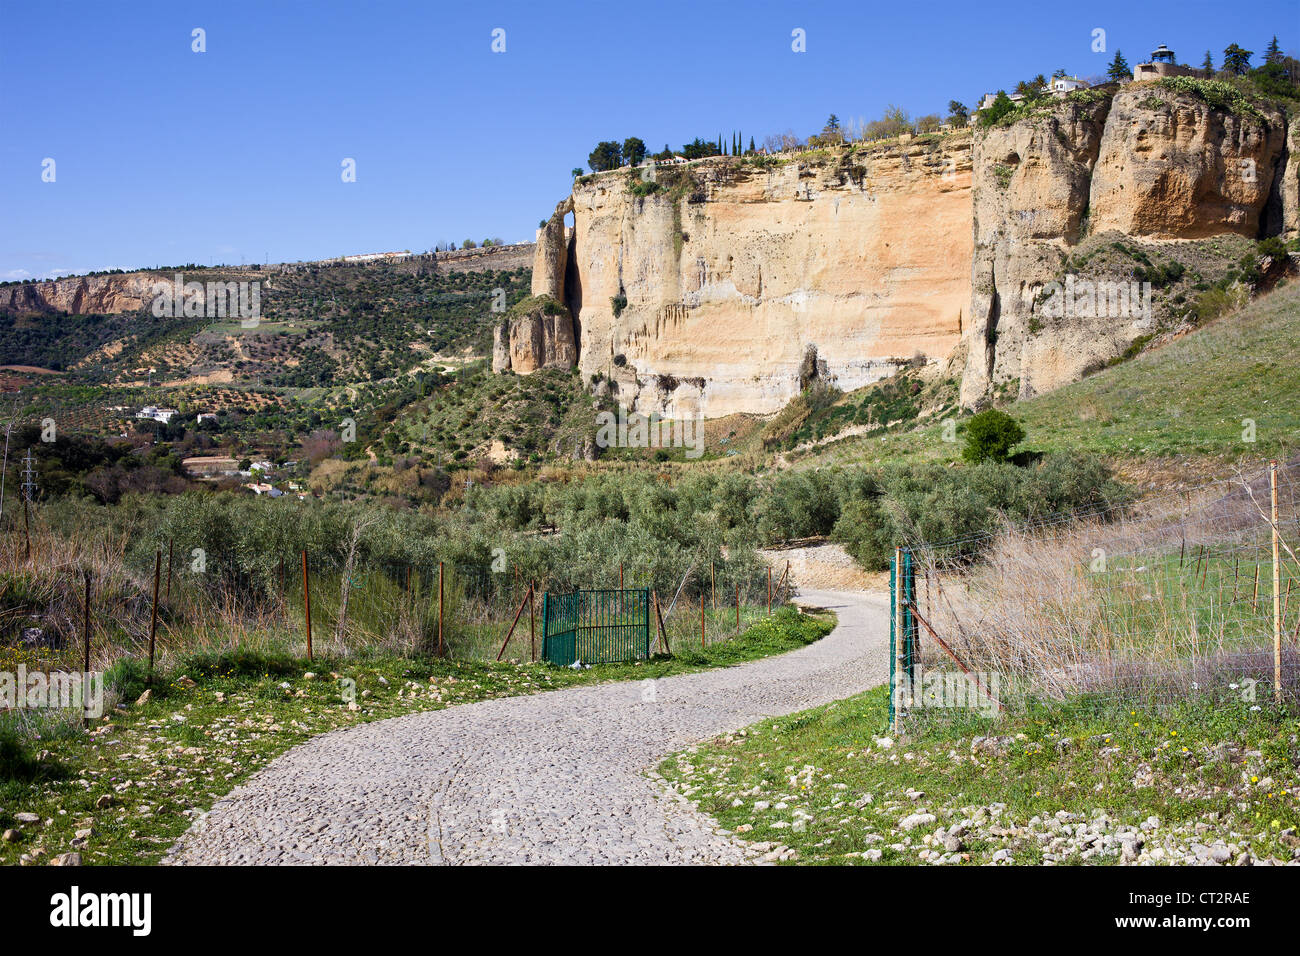 Route pavée à travers la campagne de l'Andalousie et rocher de Ronda, dans le sud de l'Espagne, la province de Malaga. Banque D'Images